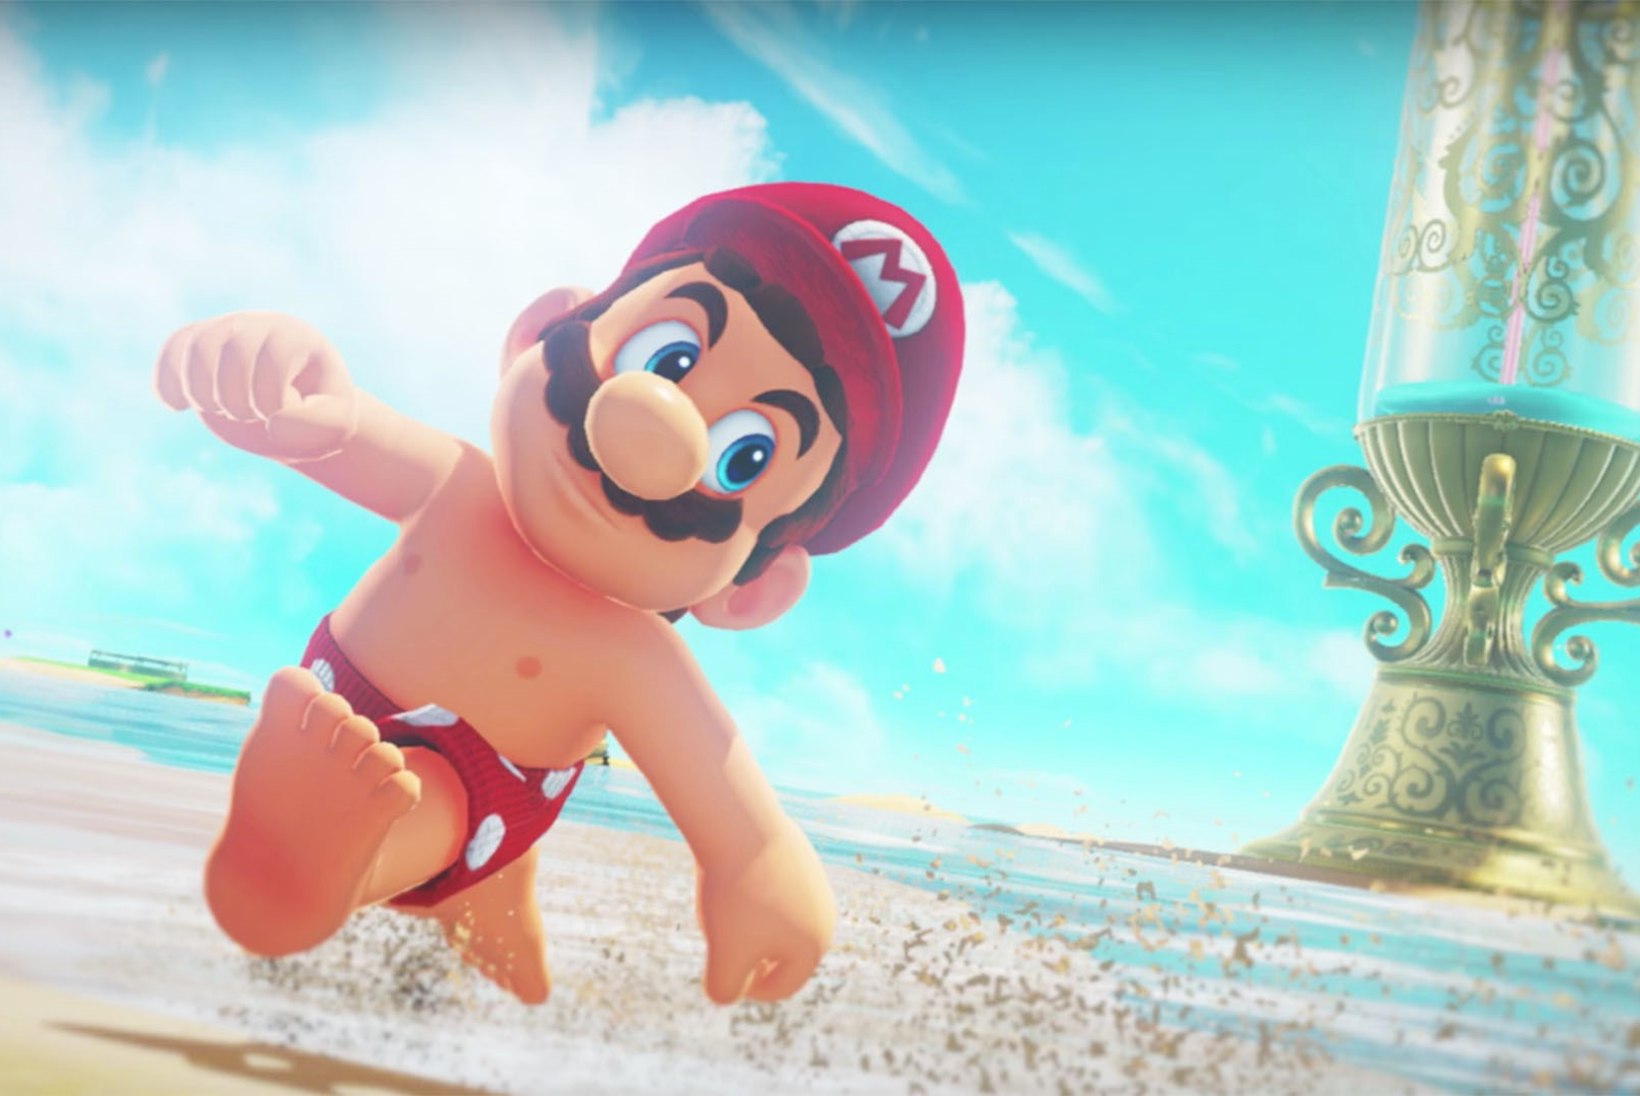 „Super Mario“ mängu on tunginud lastele keelatud ebasündsad pildid